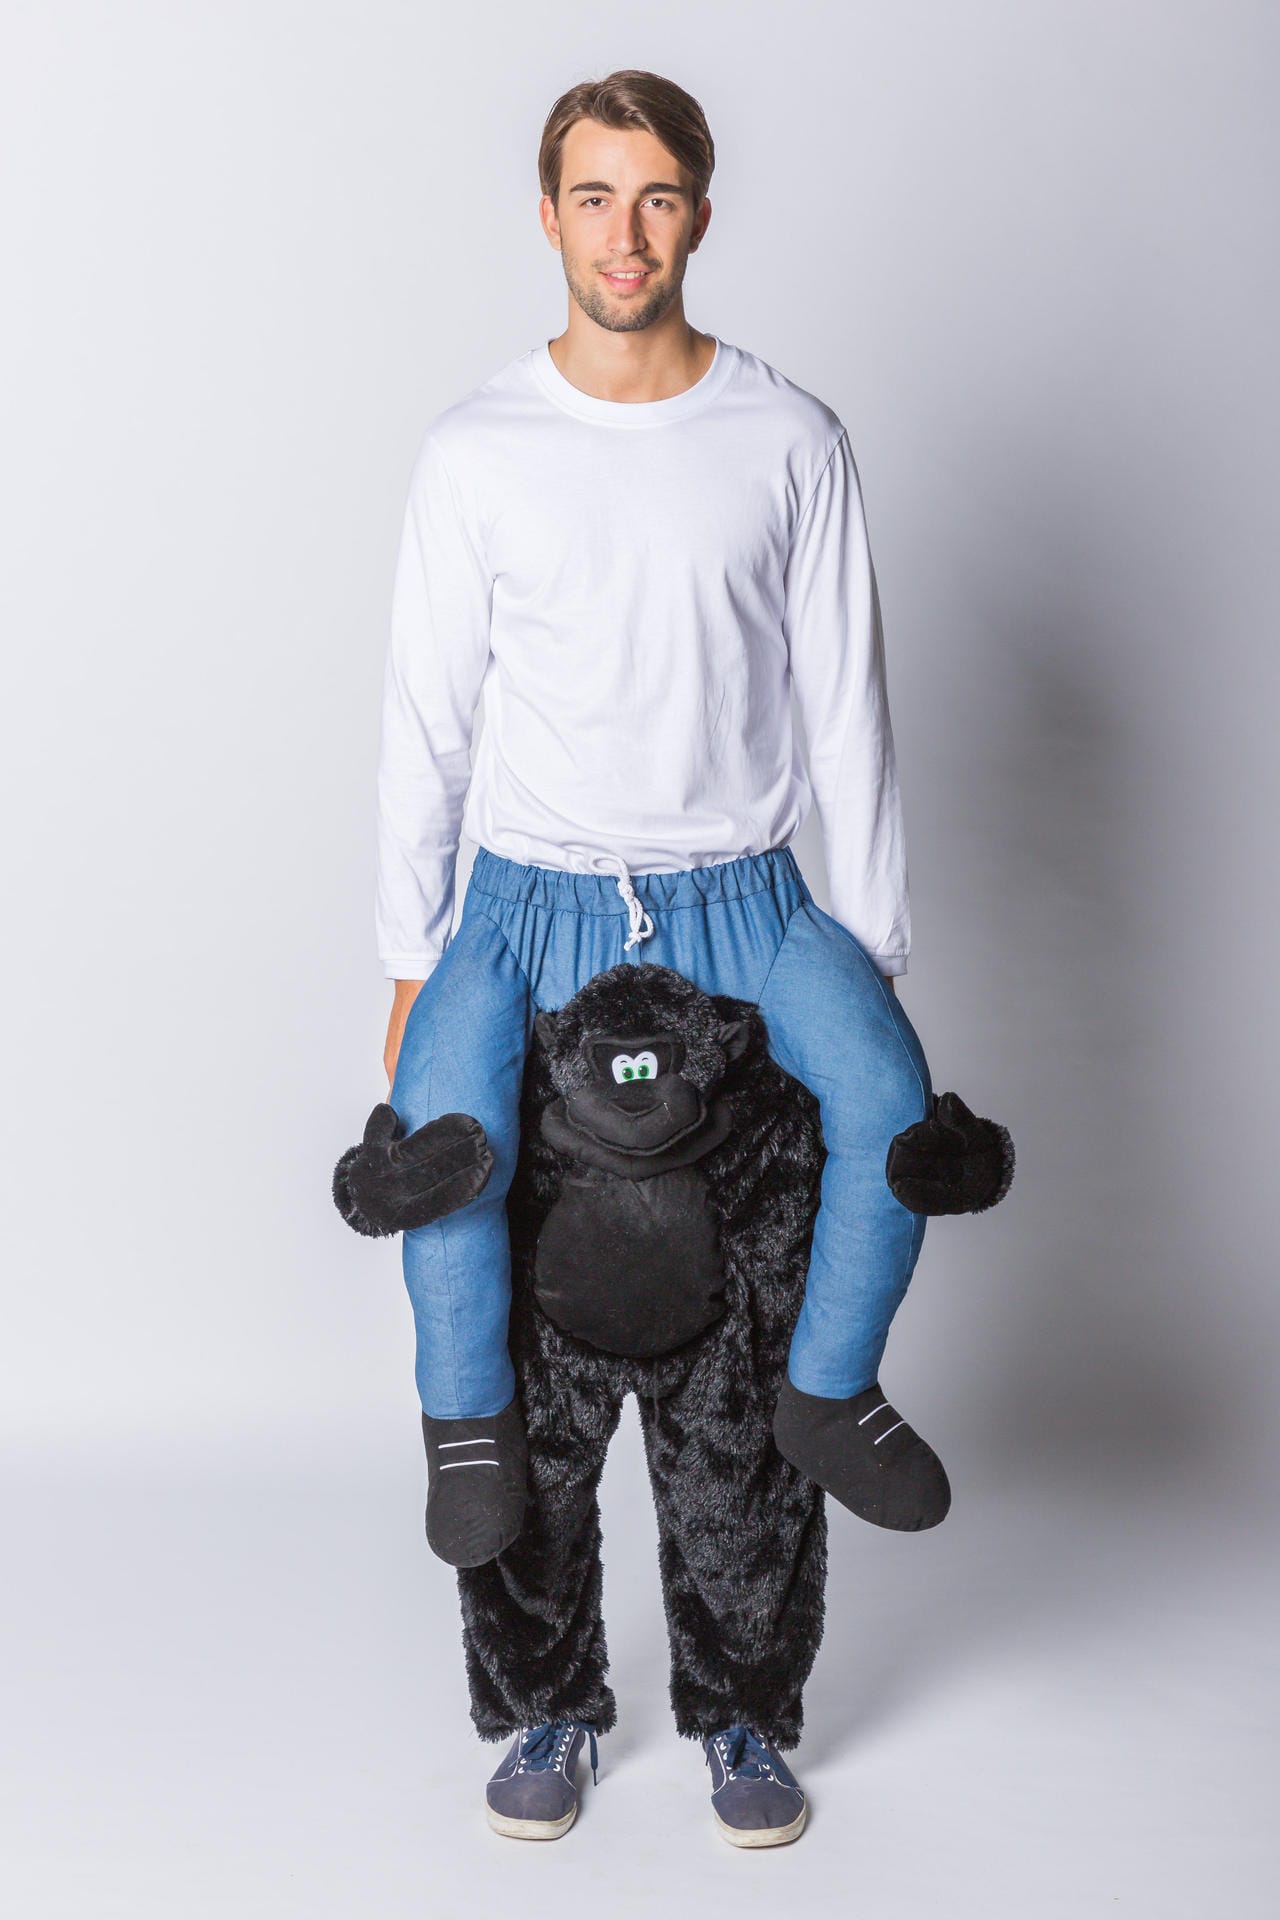 Der kleine Affe trägt einen Mann auf seinen Schultern: So wirkt es bei den sogenannten "Carry-me-Kostümen". Sie gibt es in vielen Varianten, etwa mit Zwergen oder Dinosauriern.